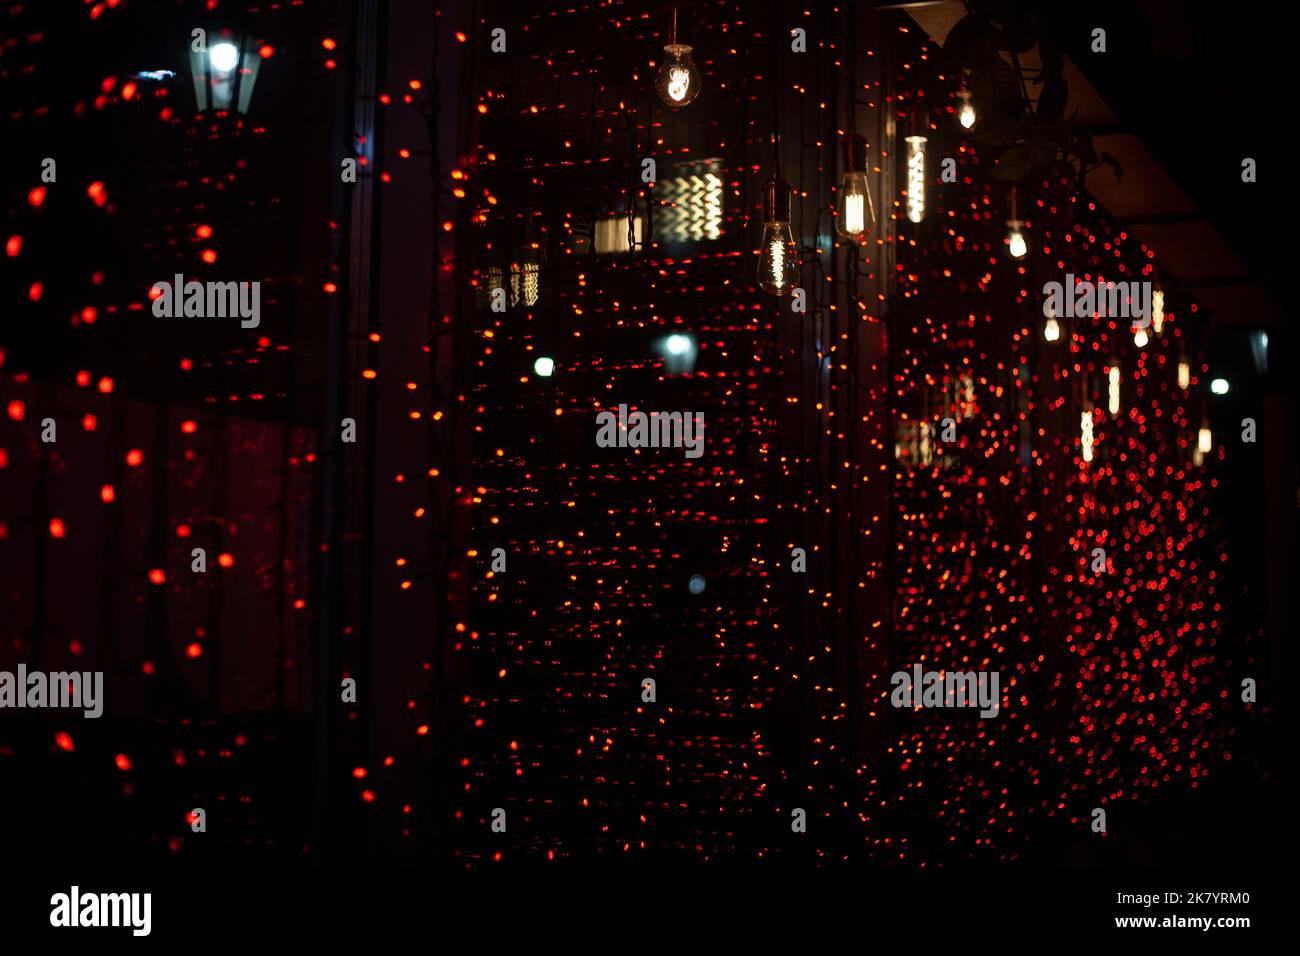 Garland sulla finestra. Luci rosse. Texture di piccole lampade. Dettagli della finestra. Sorgente luminosa. Foto Stock